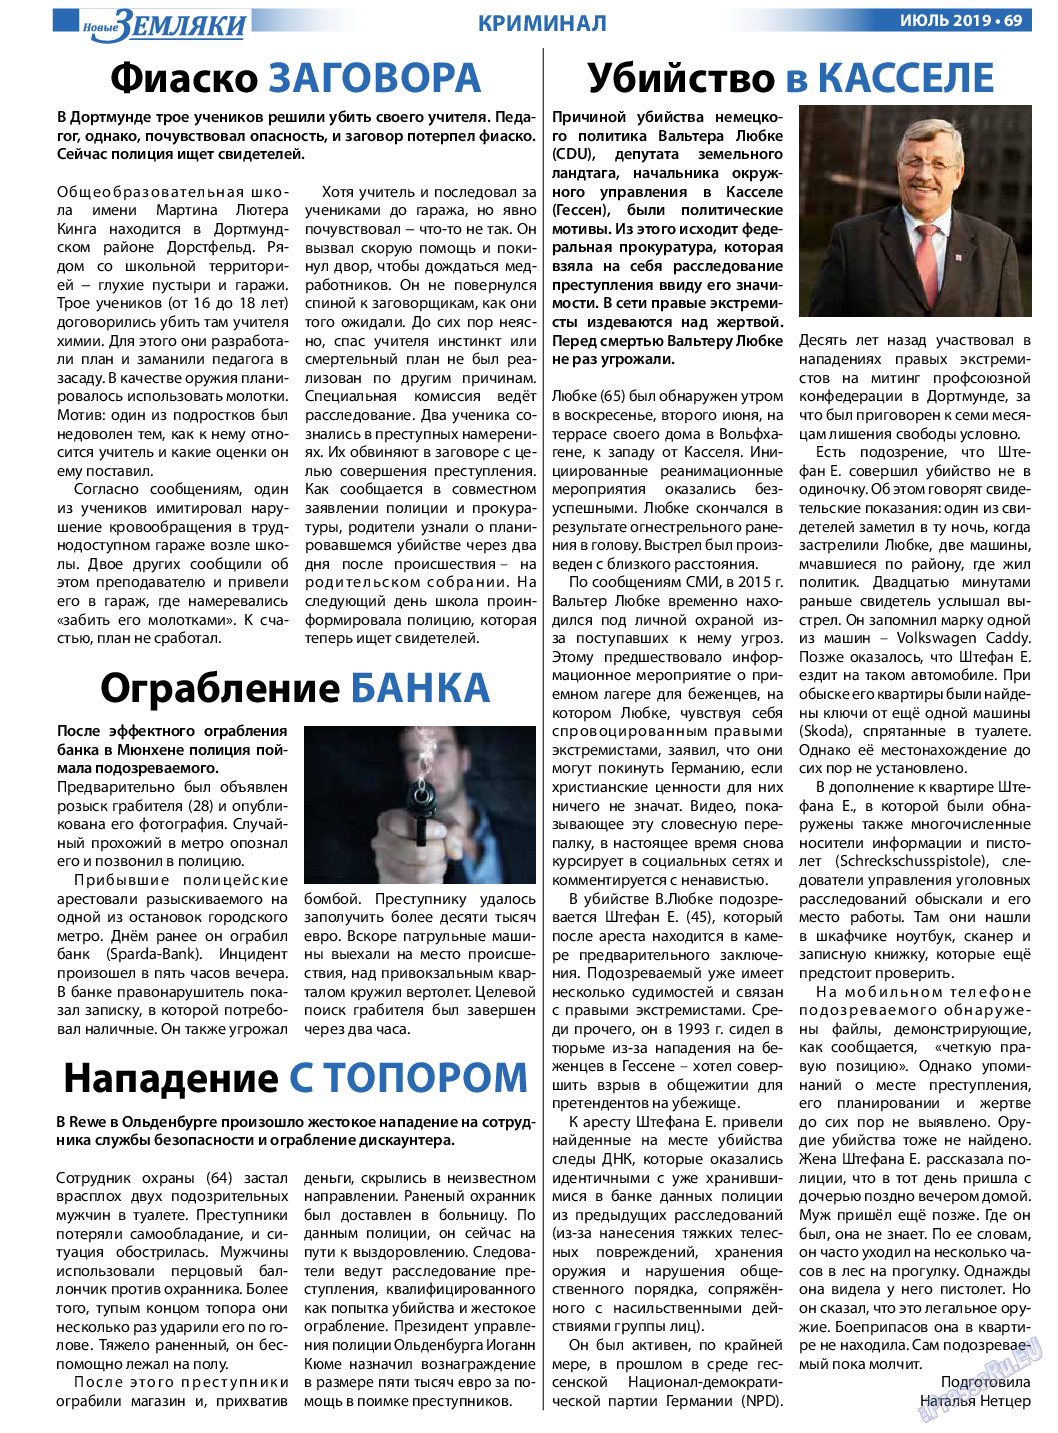 Новые Земляки, газета. 2019 №7 стр.69